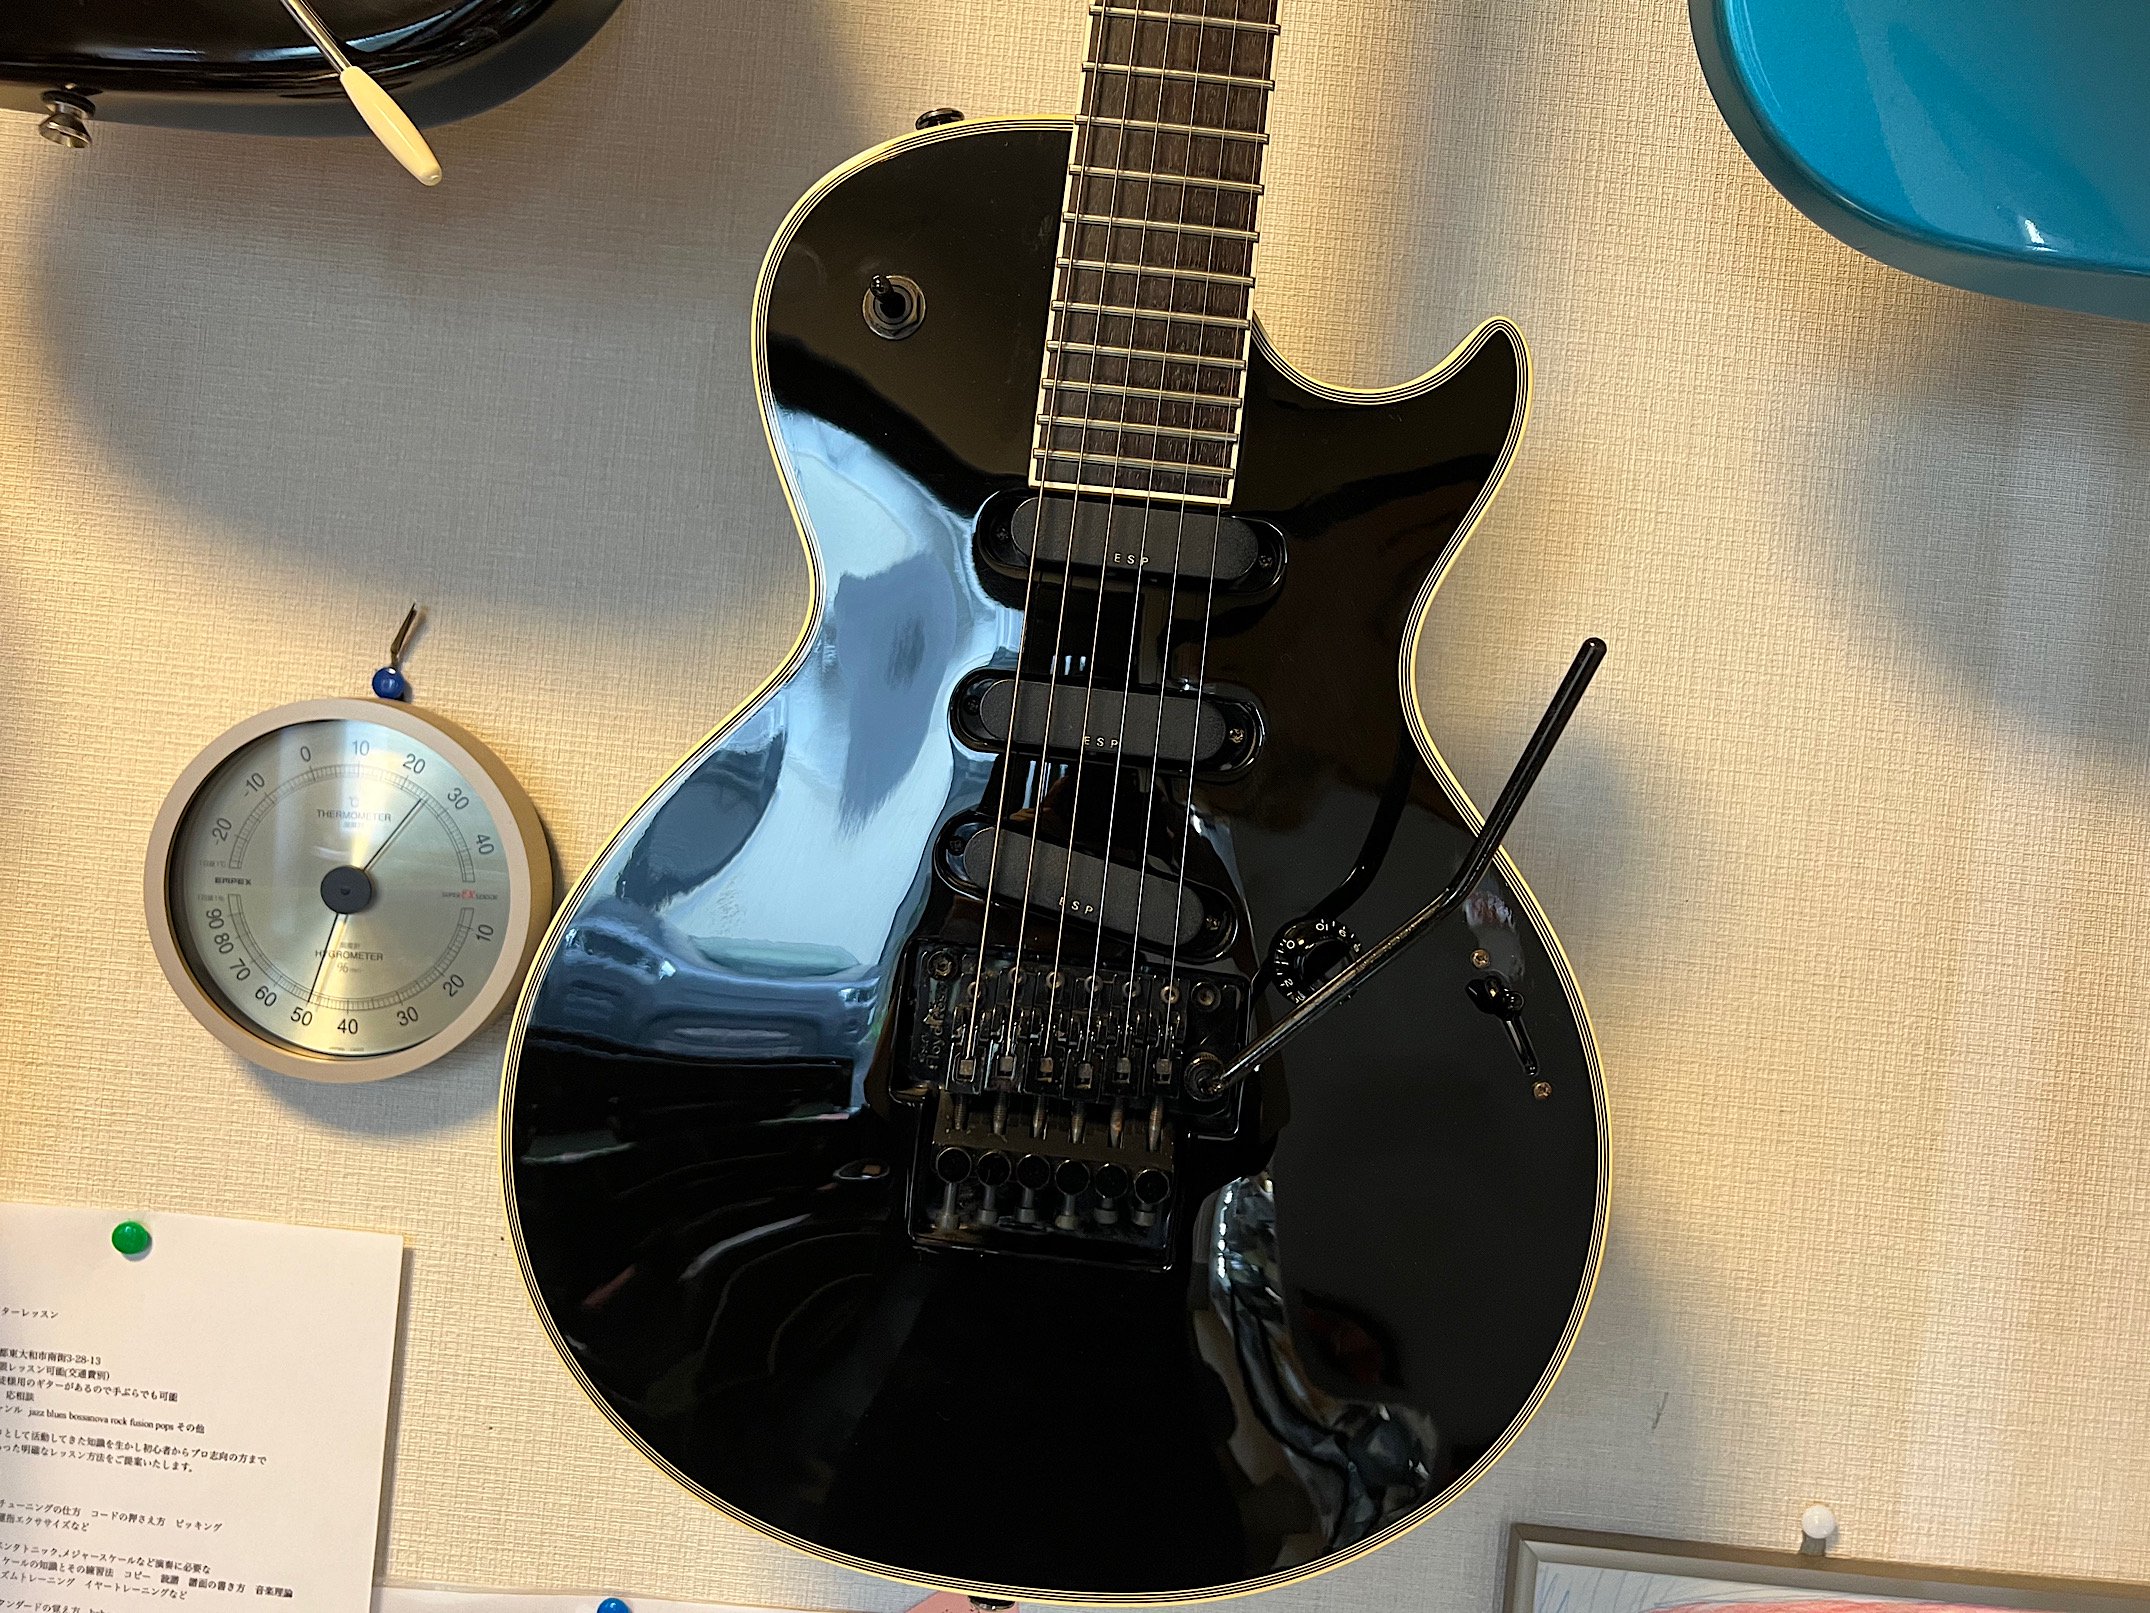 正規品/新品 Edwards SUGIZO E-CL-90 エレキギター レスポールタイプ 